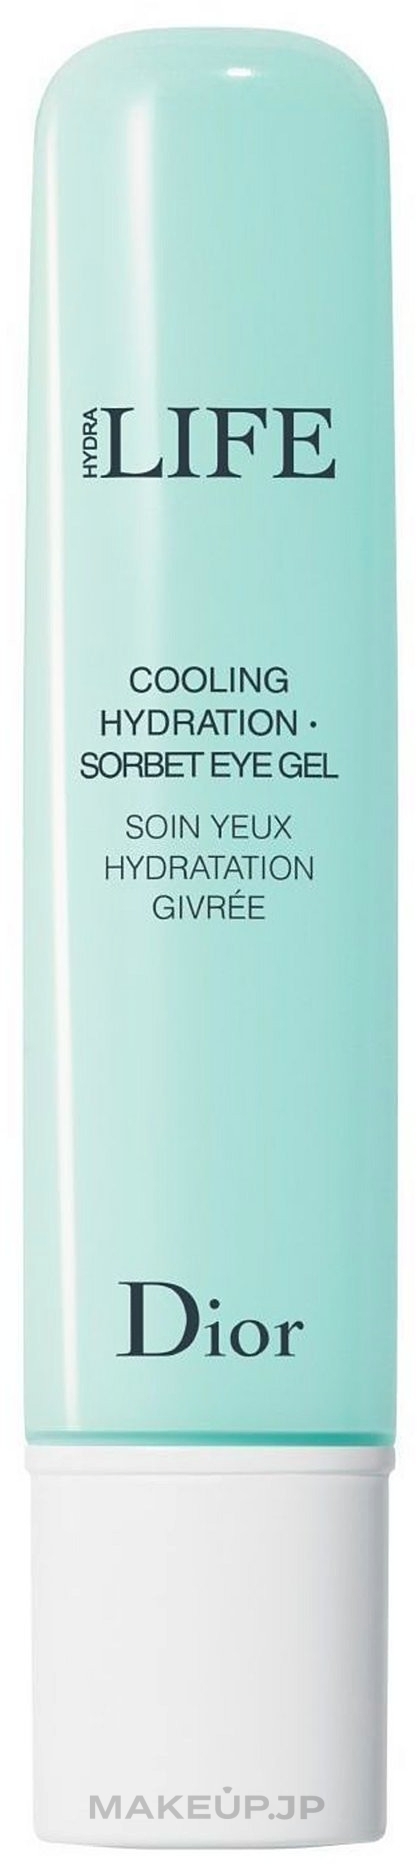 Cooling Hydration - Sorbet Eye Gel - Dior Hydra Life  — photo 15 ml